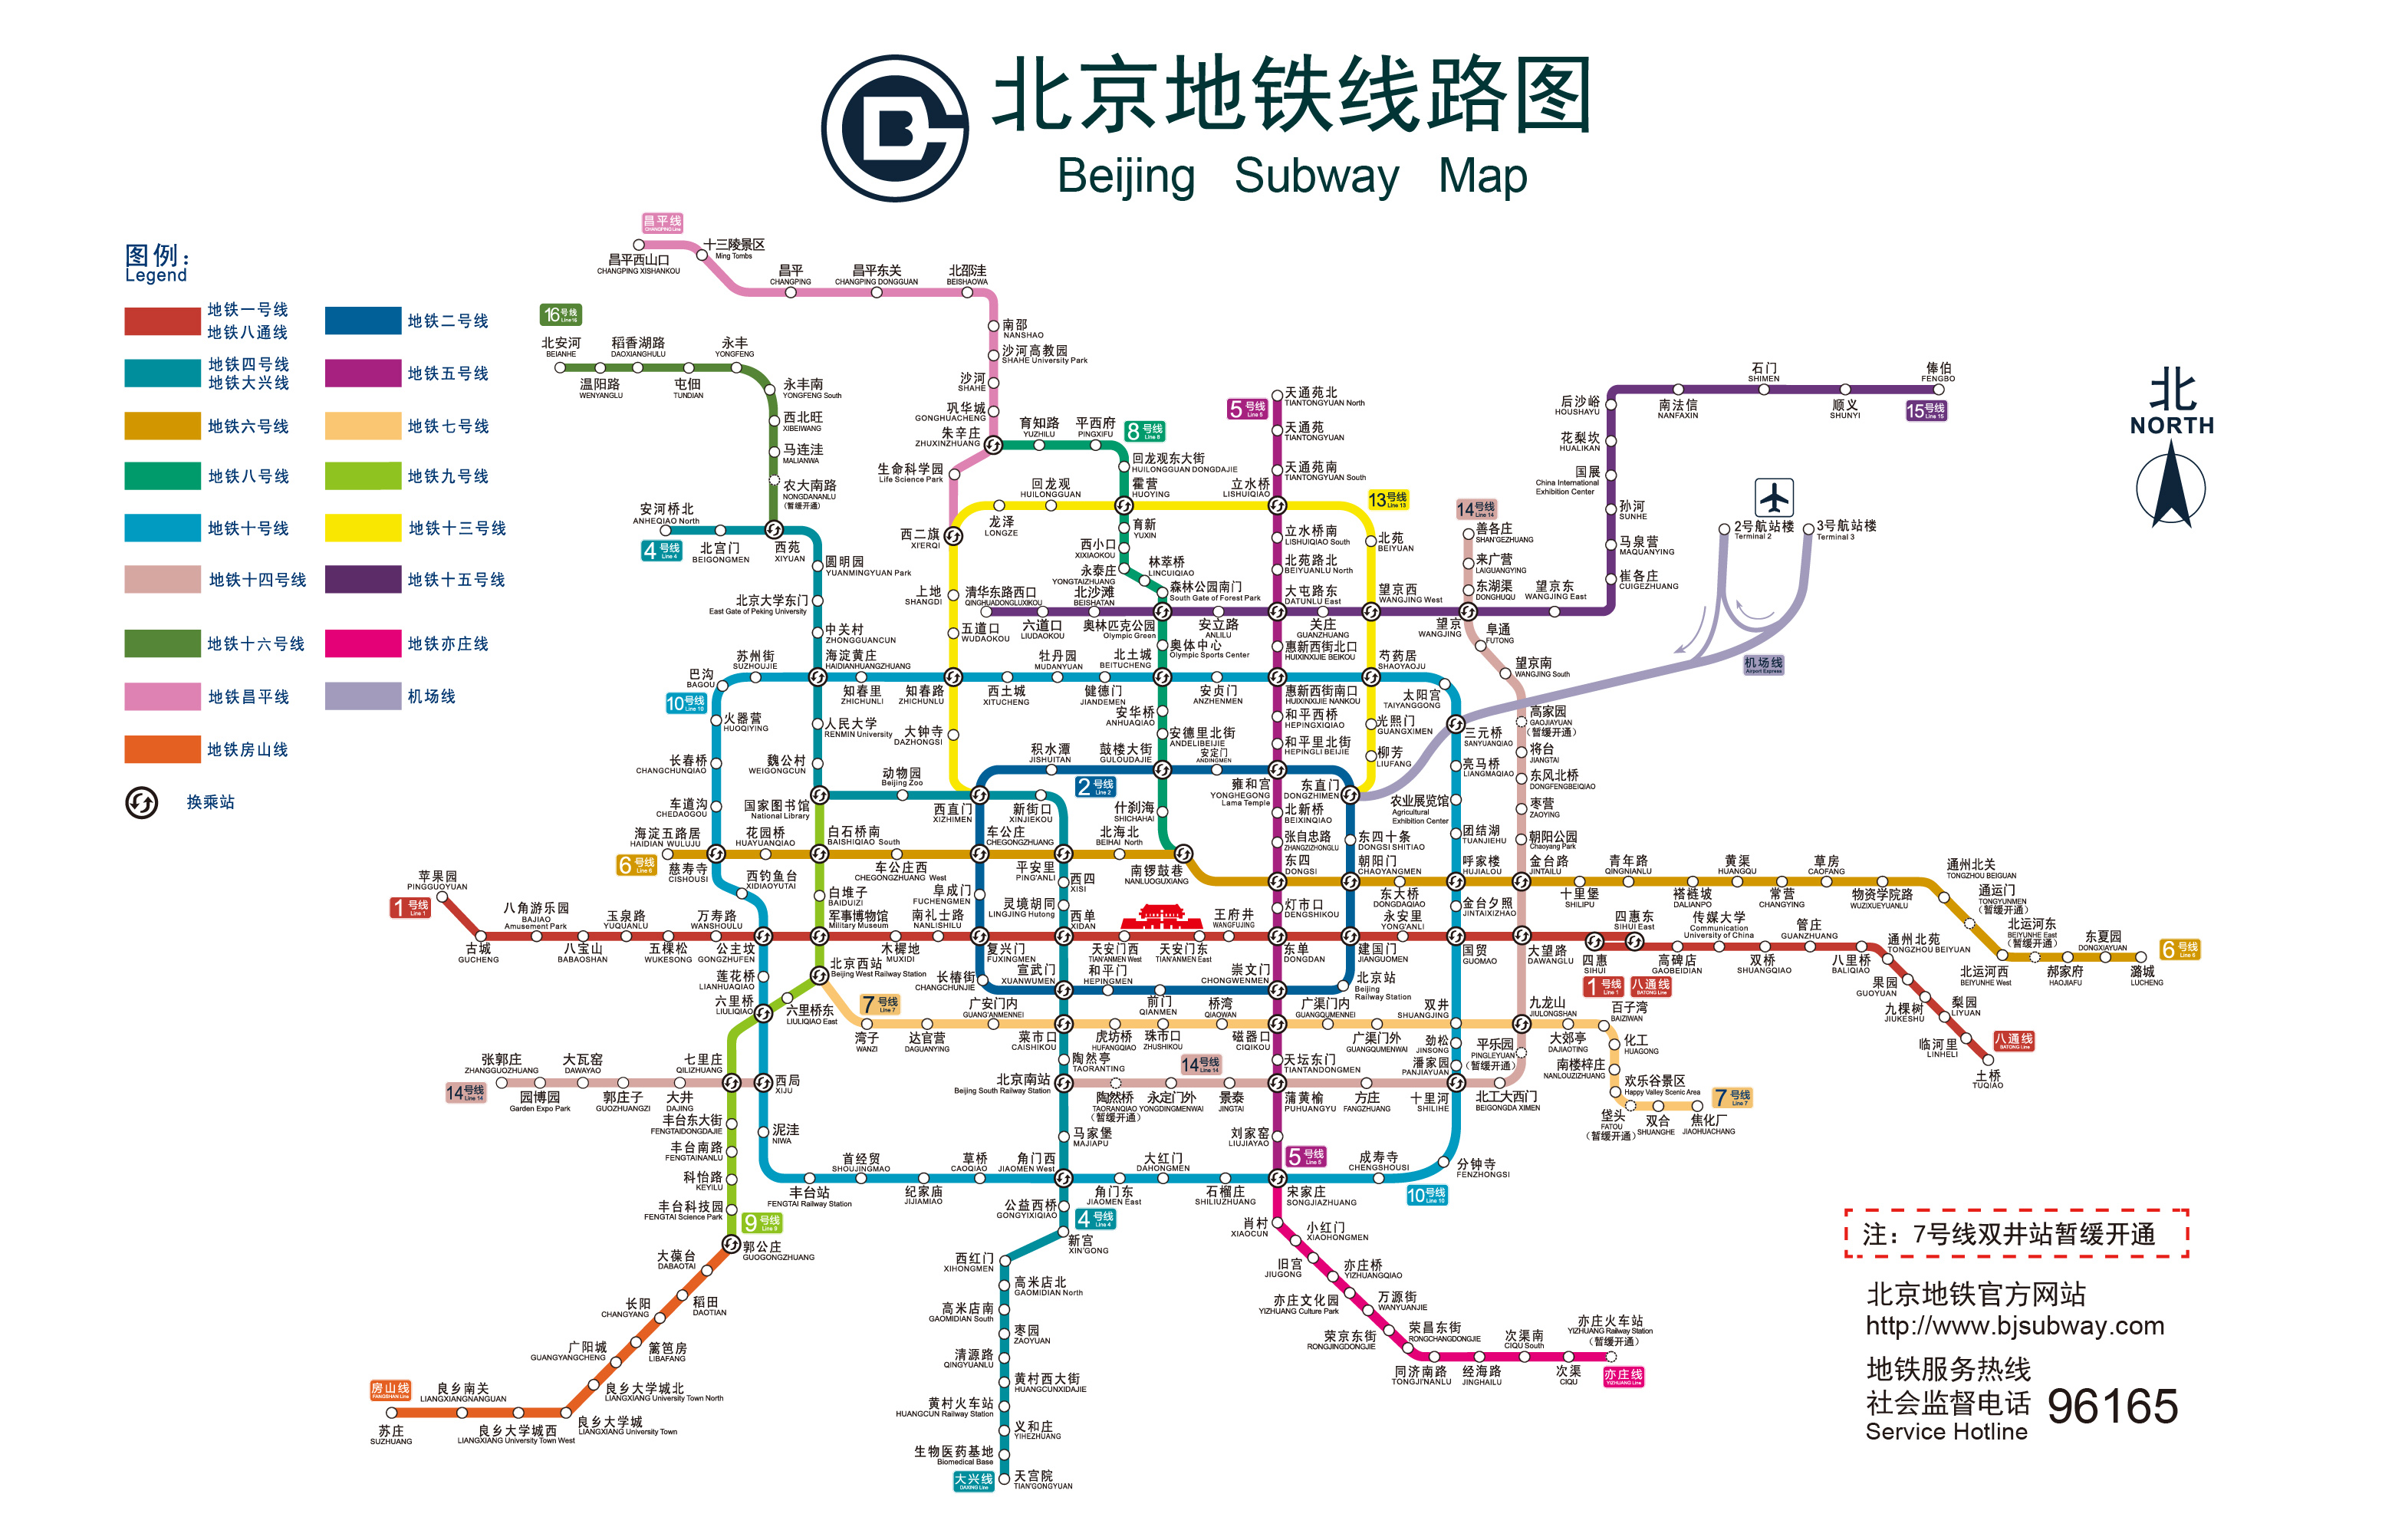 我想找北京地铁线路图.